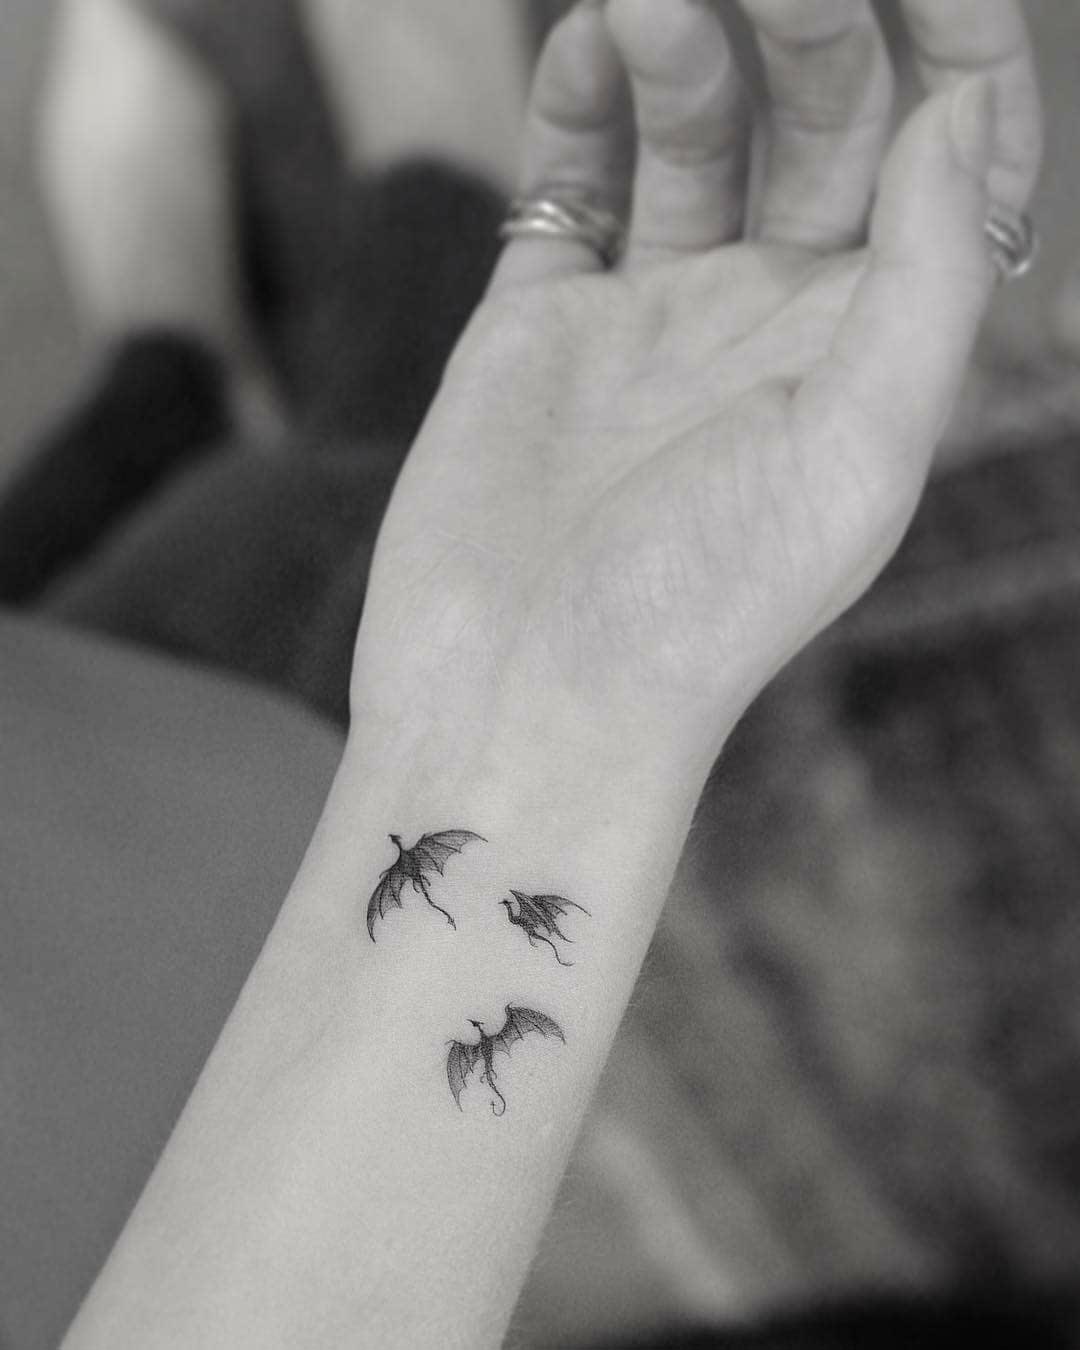 wrist tattoo dragons